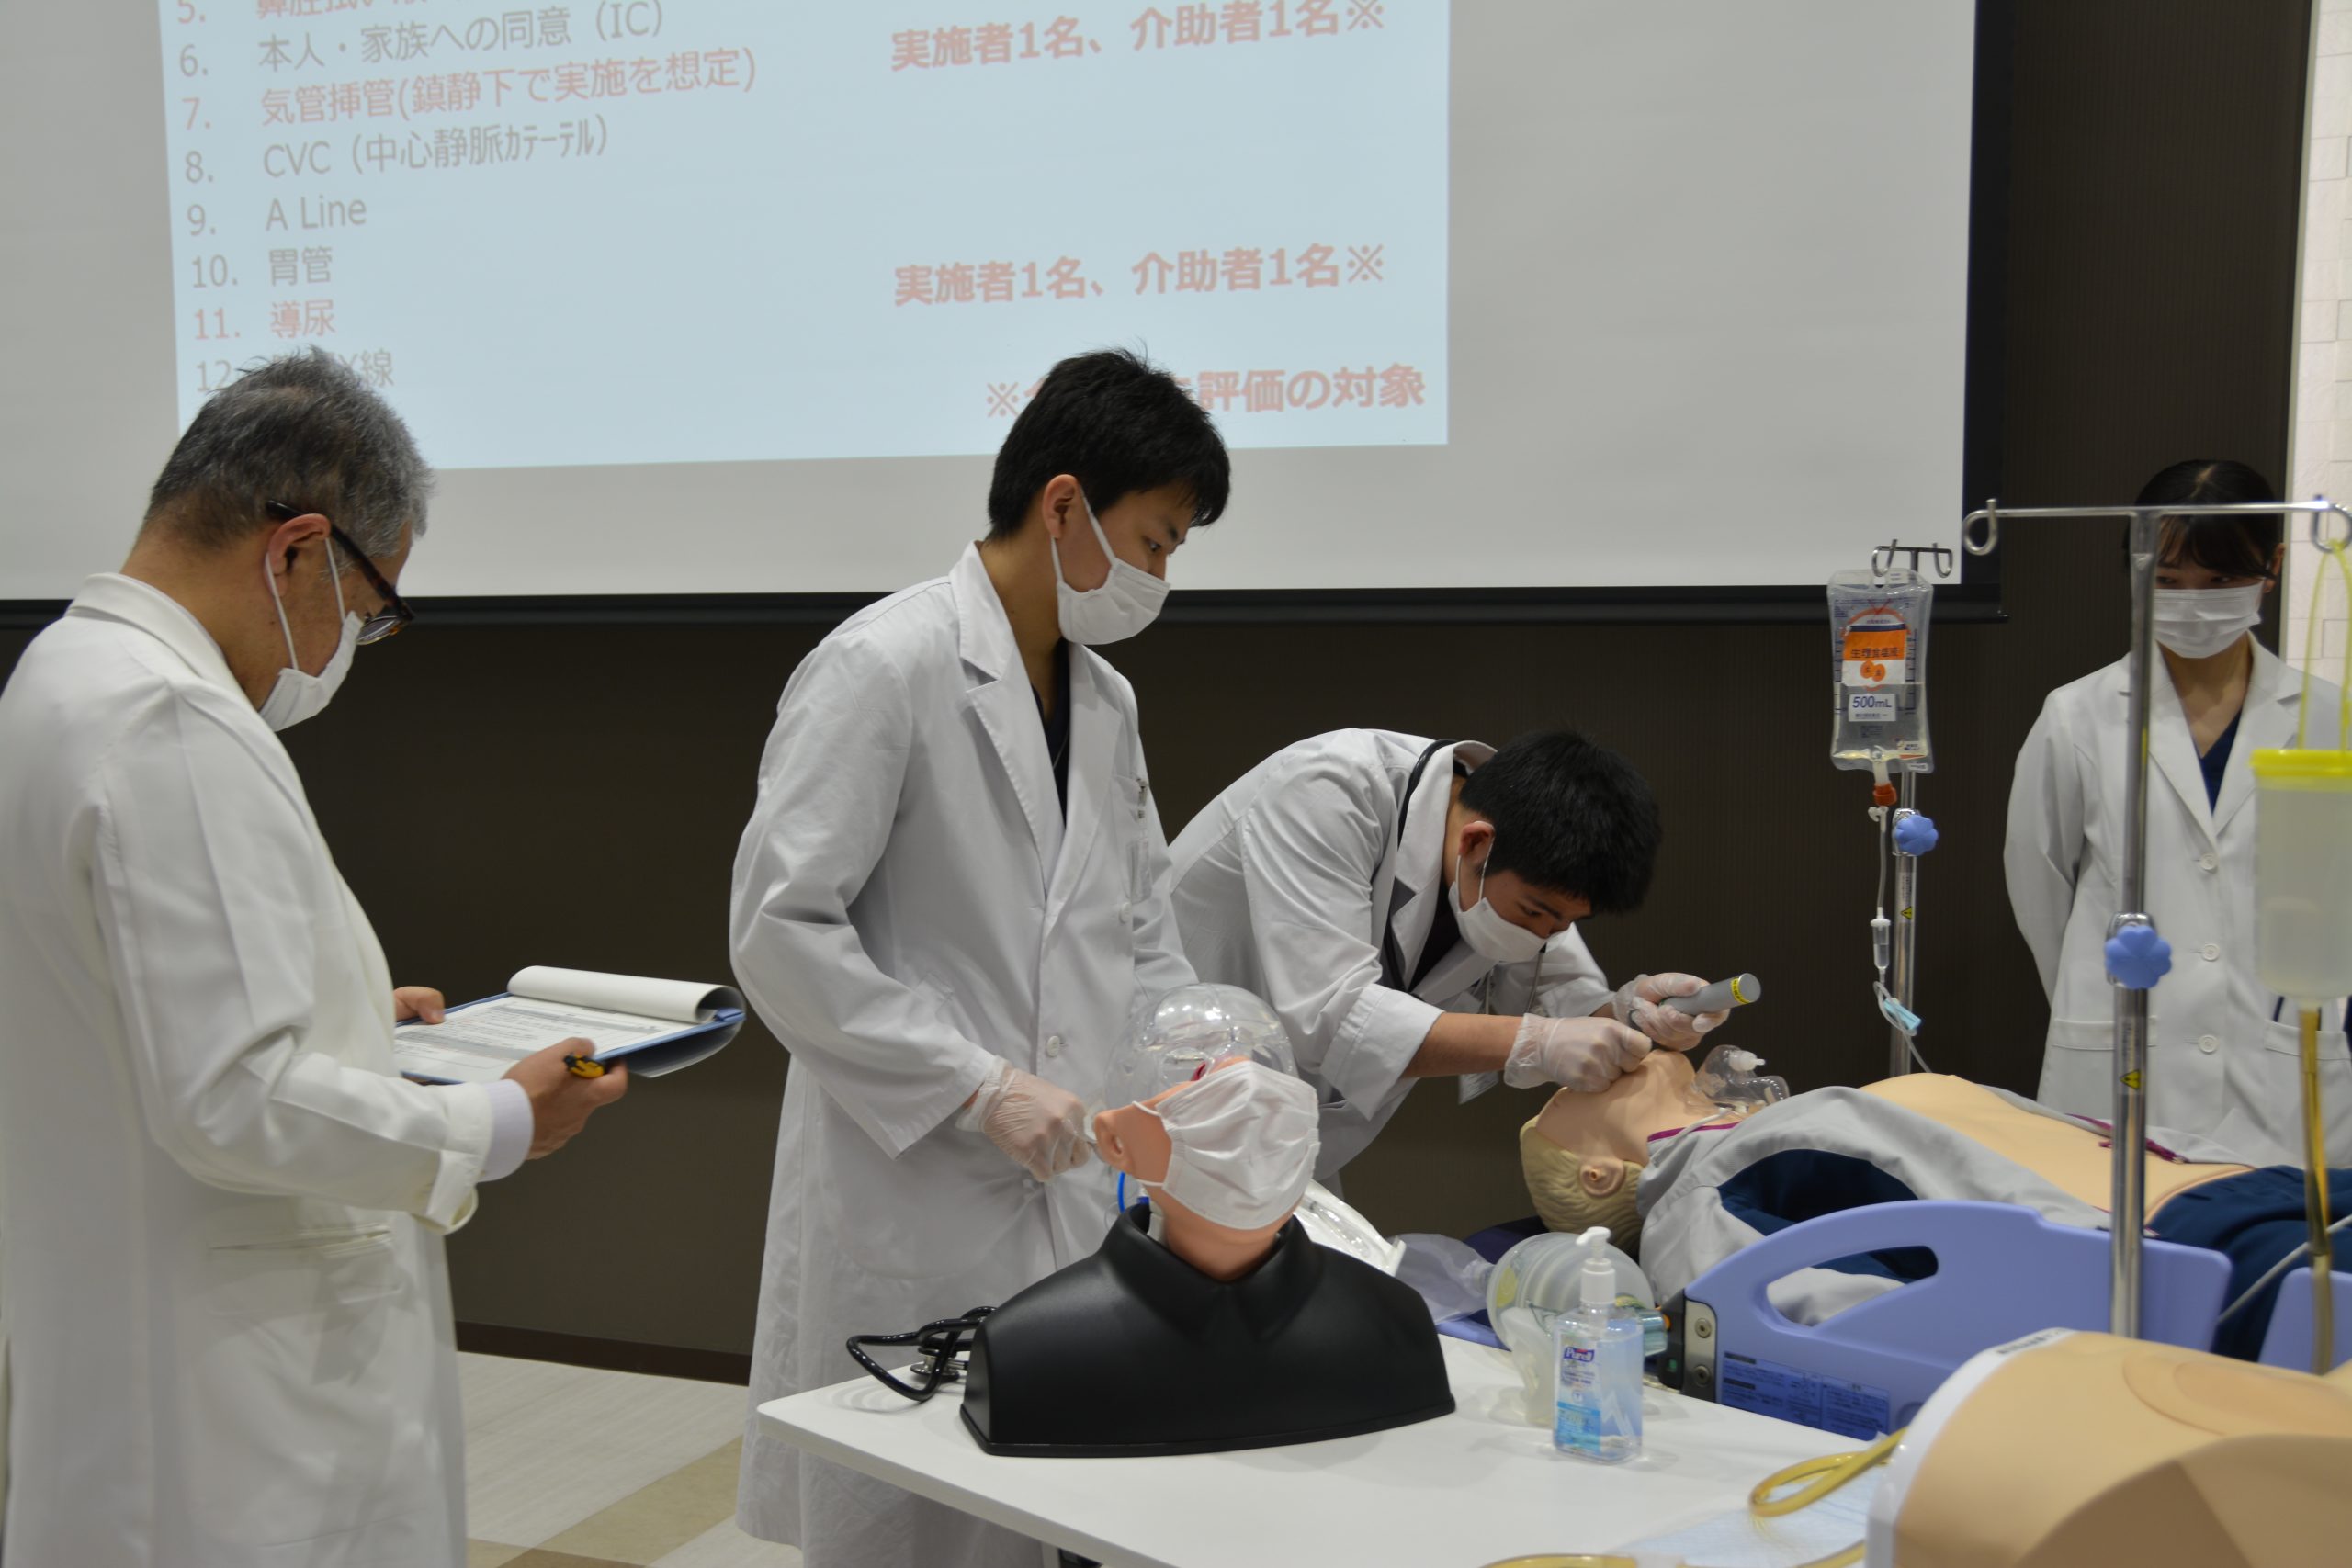 第1回愛媛大学医学部シミュリンピック大会を開催しました